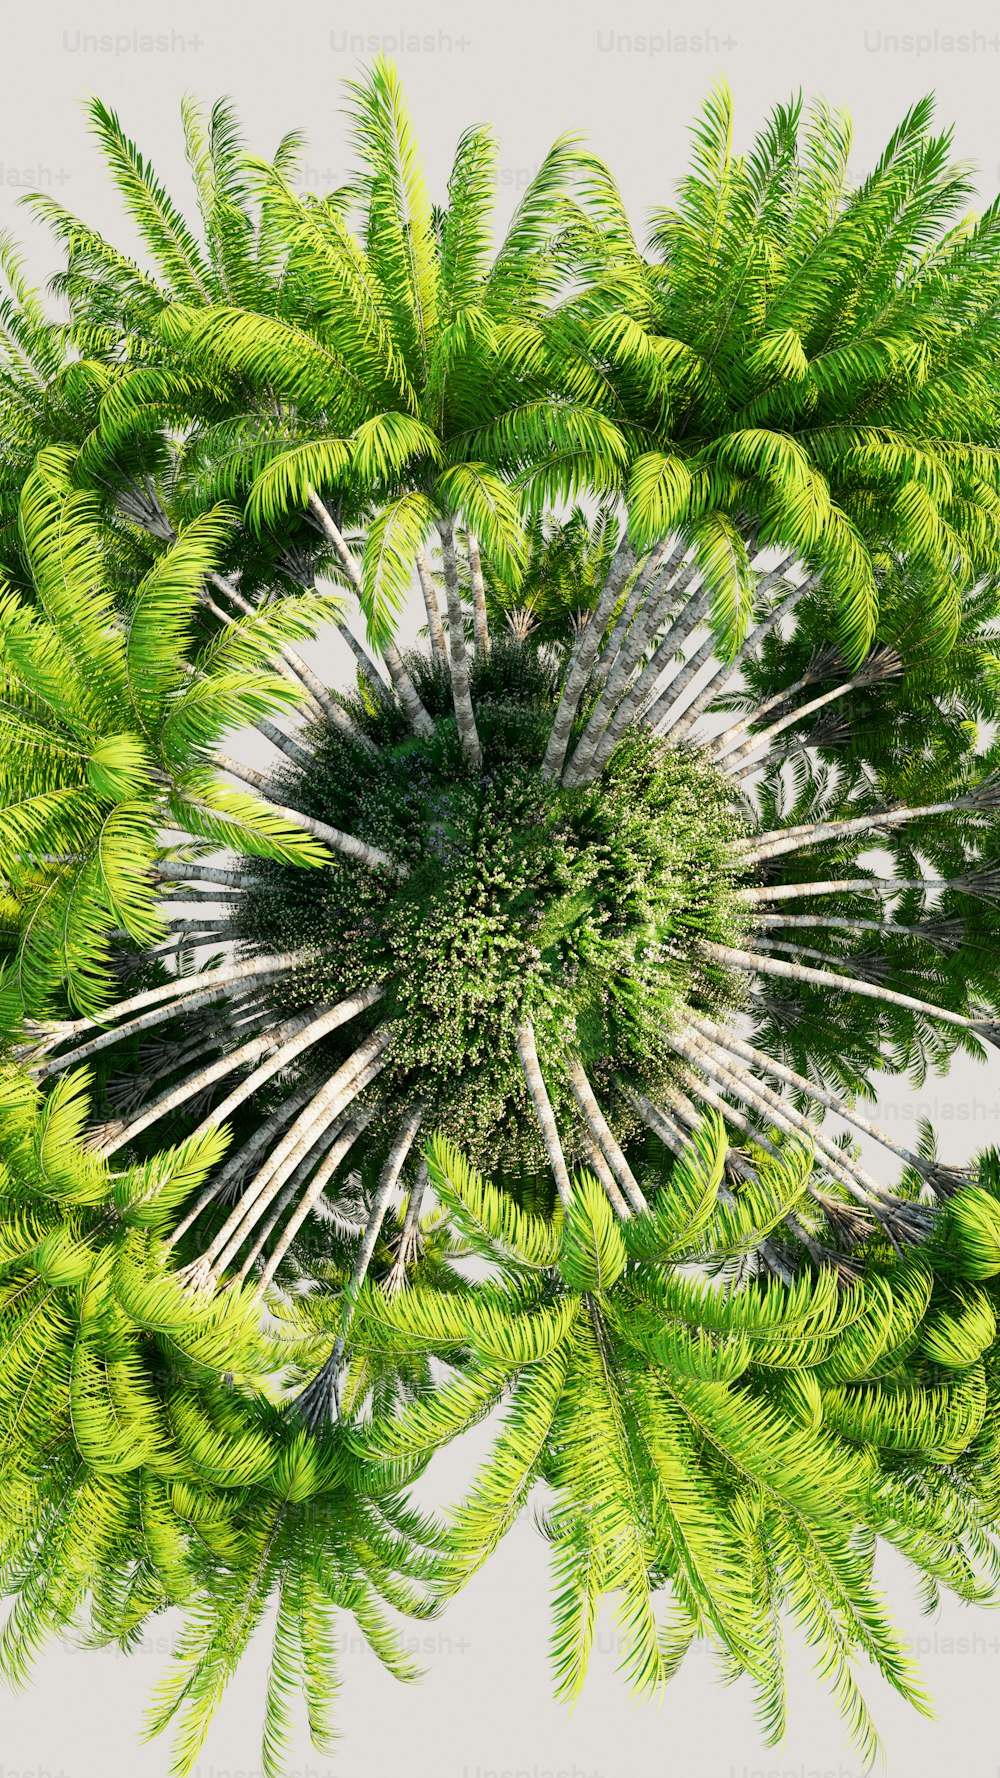 Eine grüne Pflanze mit vielen Blättern um sie herum